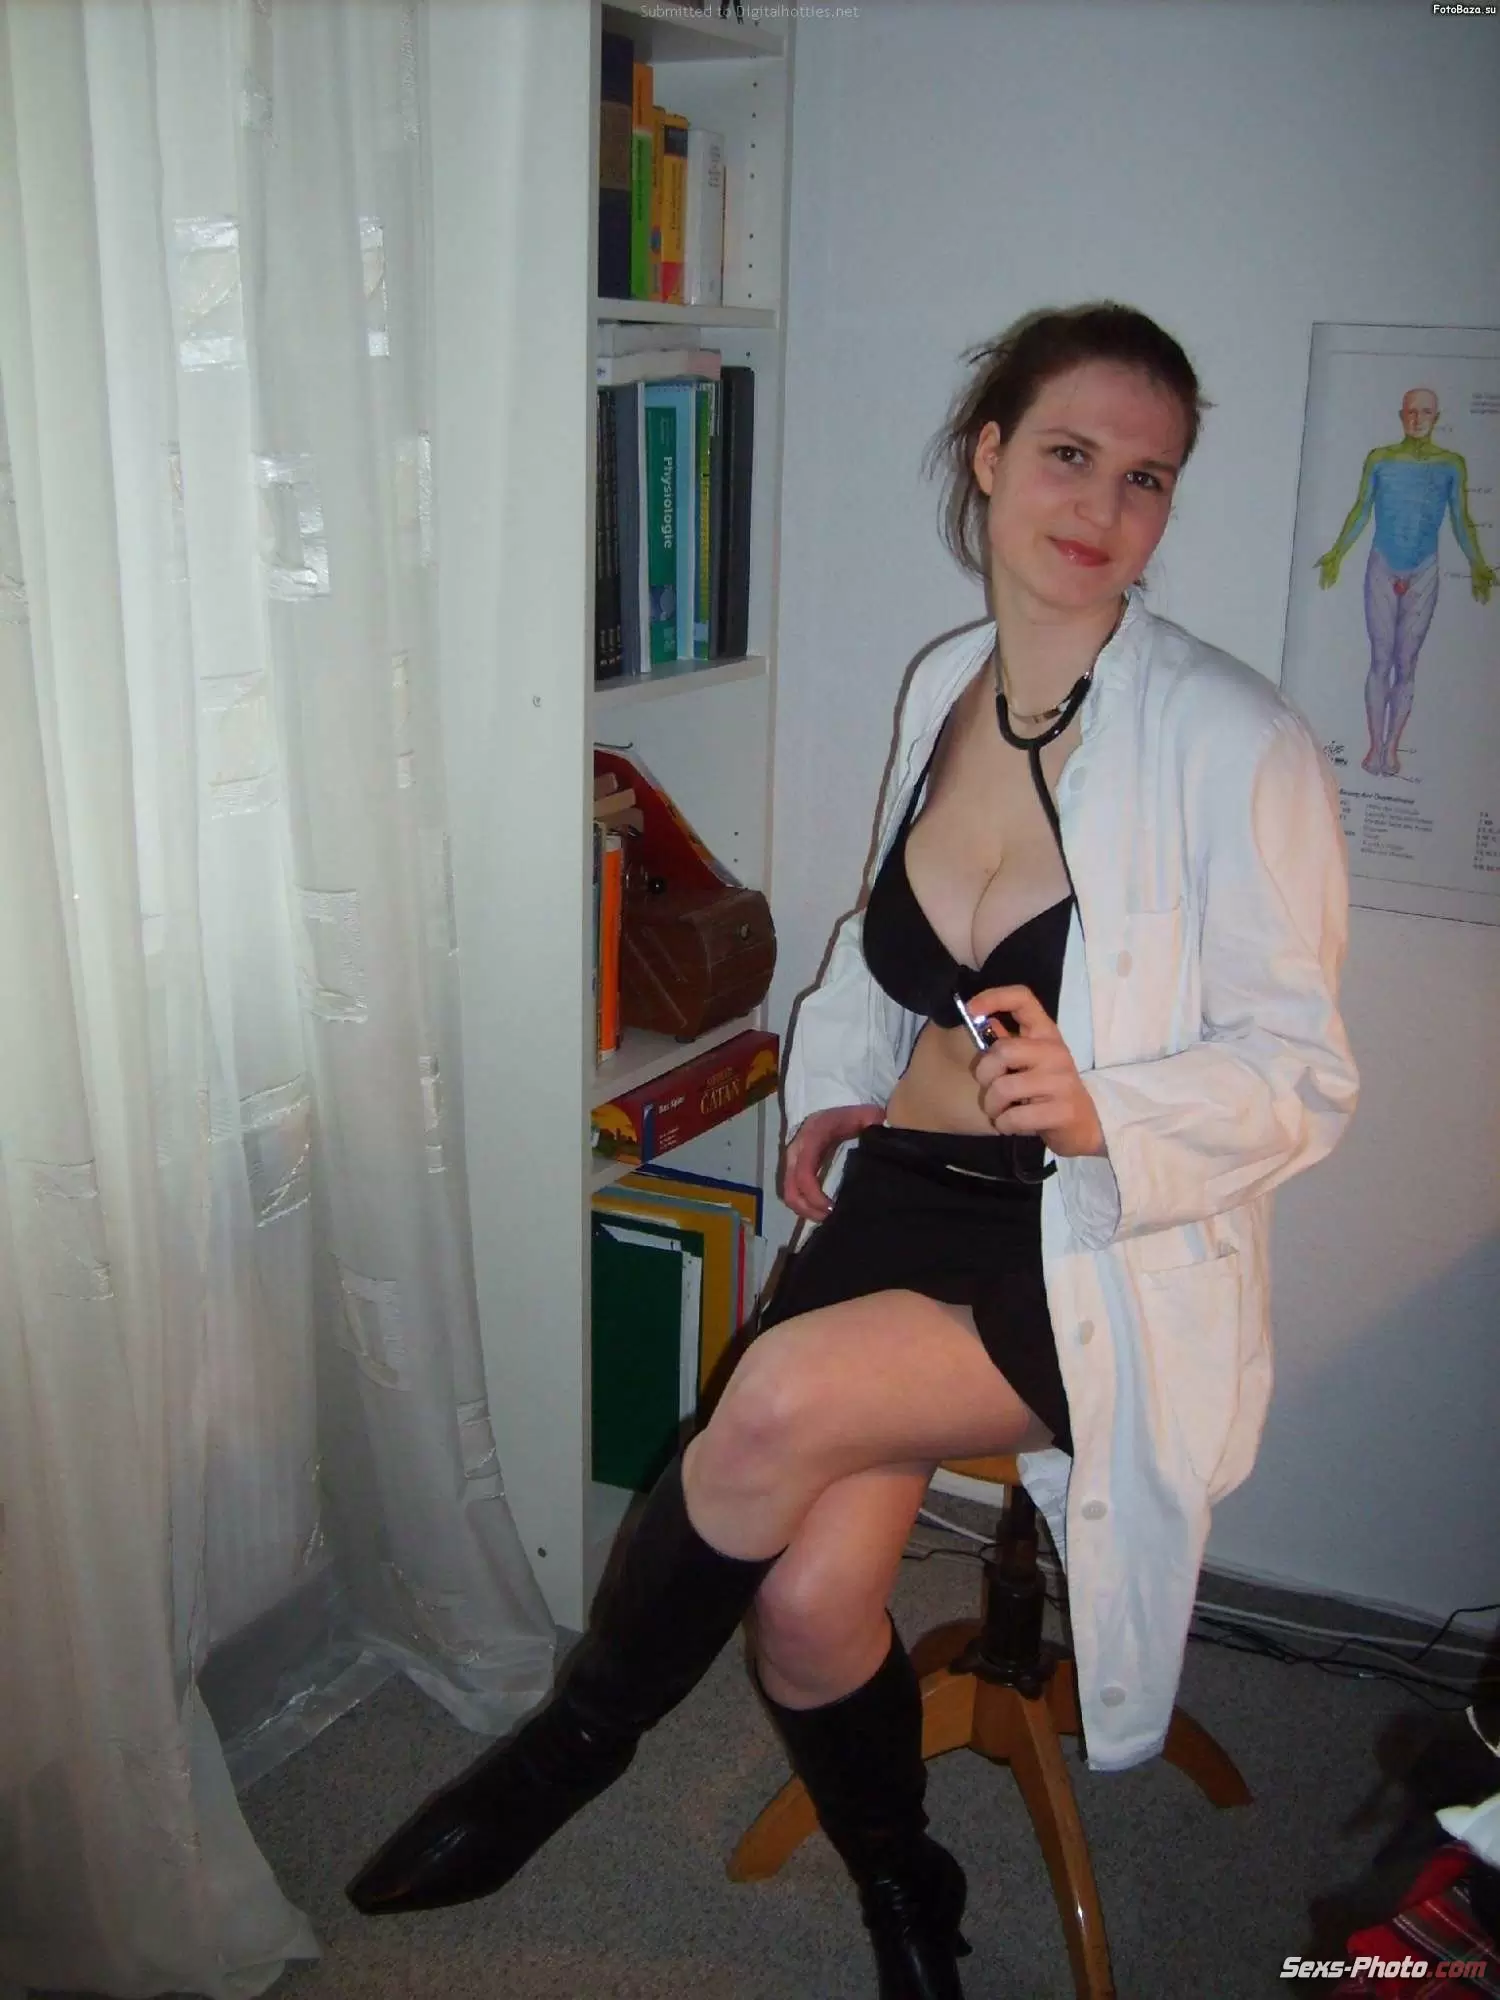 54 порно фото из личного альбома медсестры развратницы. (53 фото)